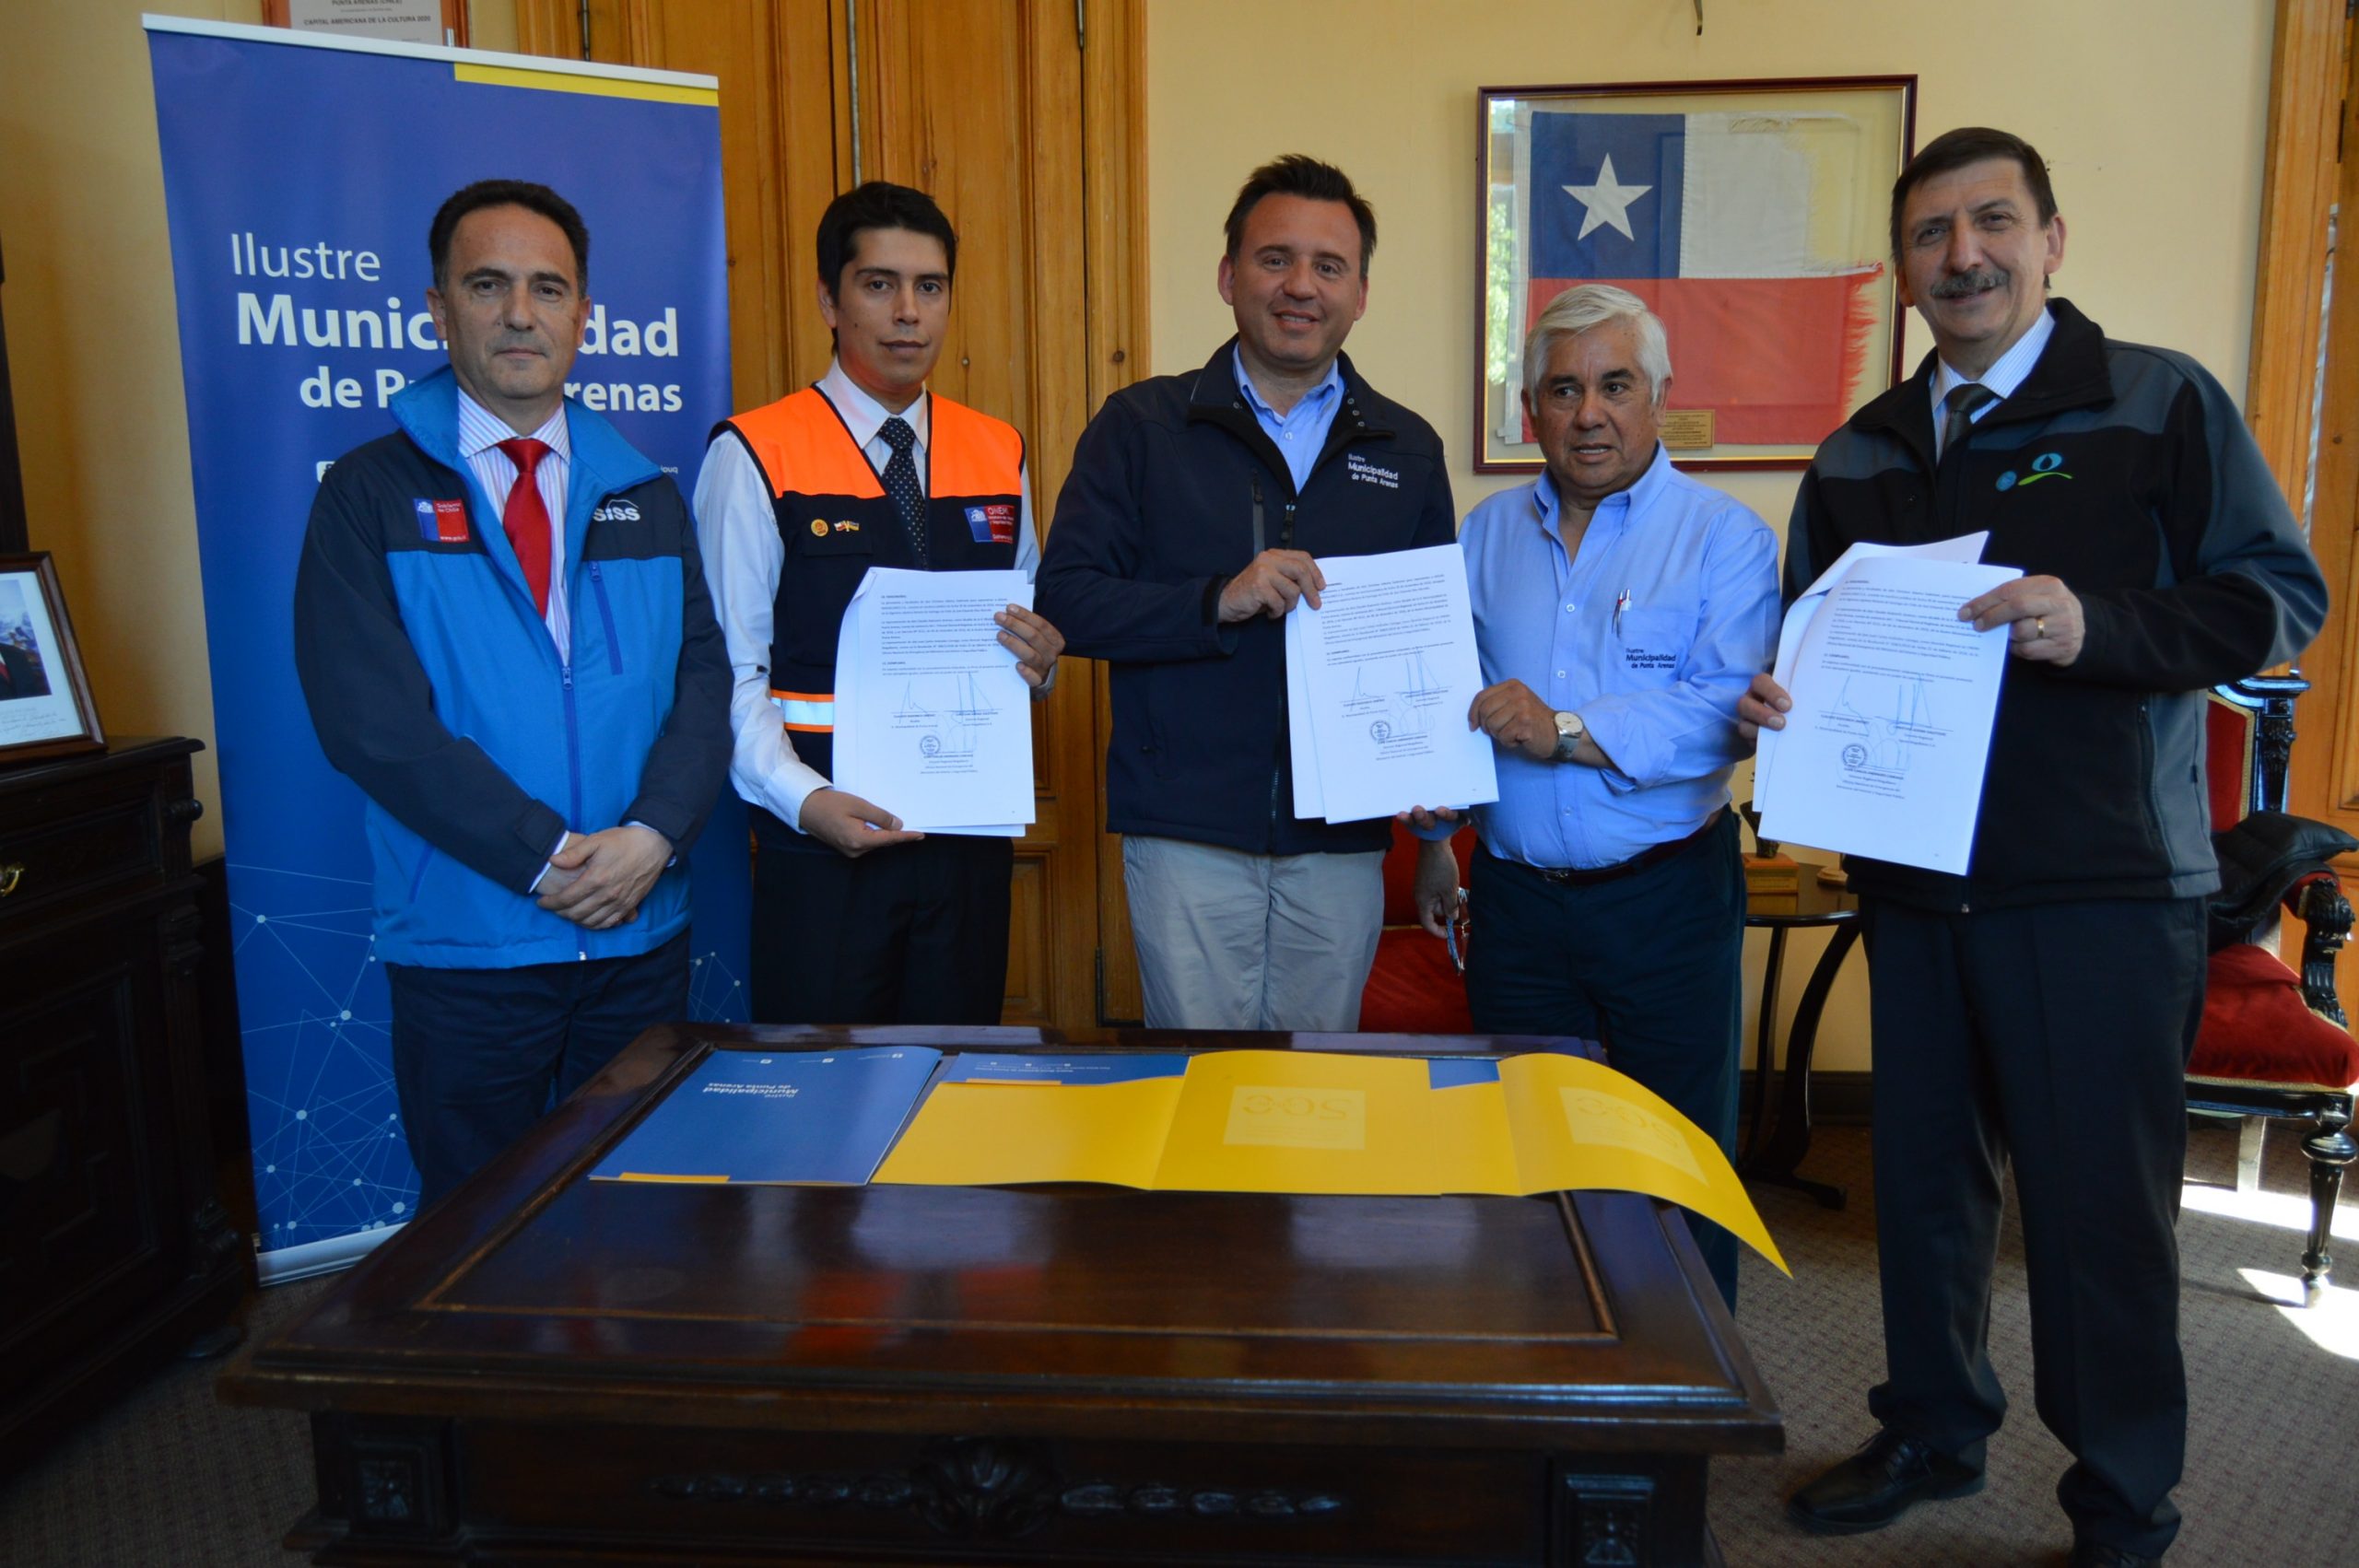 Para abastecimiento de agua potable ante cortes masivos y prolongados:  Aguas Magallanes, Onemi y Municipalidad de Punta Arenas  firman Protocolo de Emergencia Regional